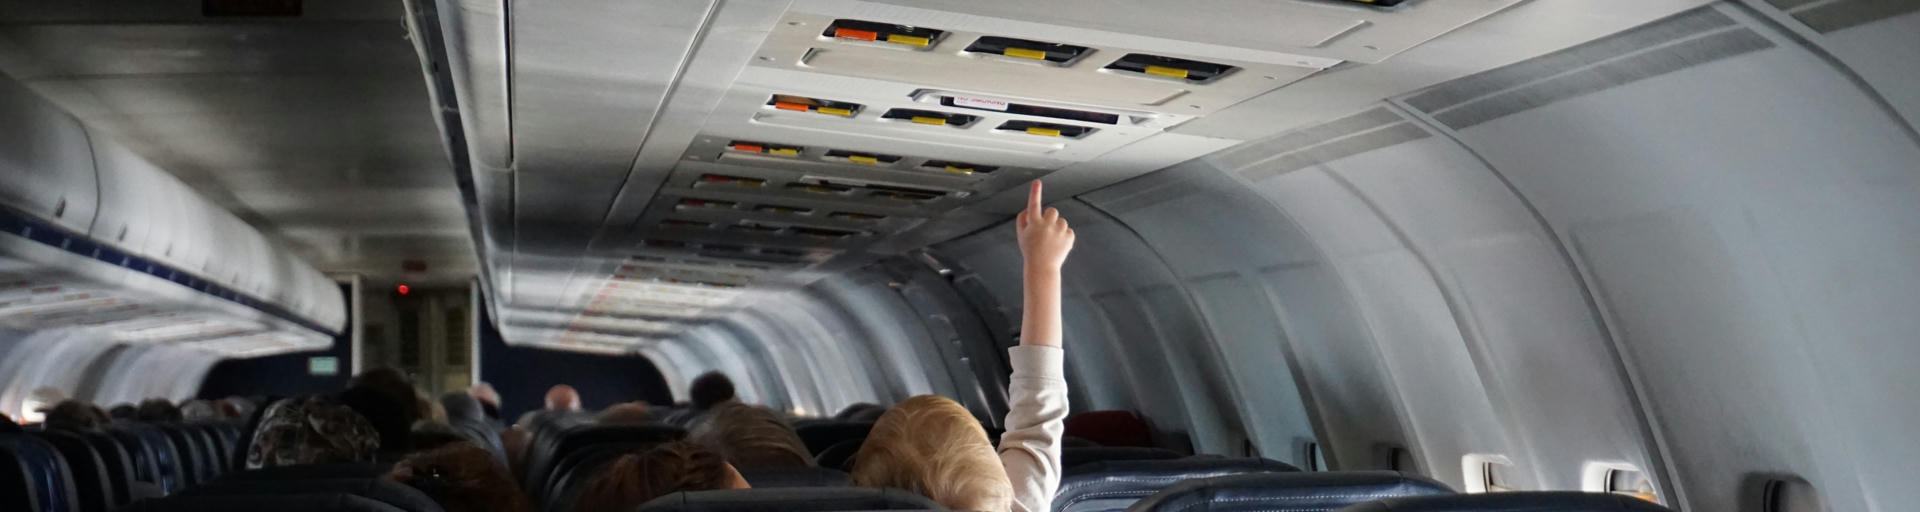 Kind sitzt im Flugzeug und hebt den Zeigfinger ume inen Knopf zu drücken